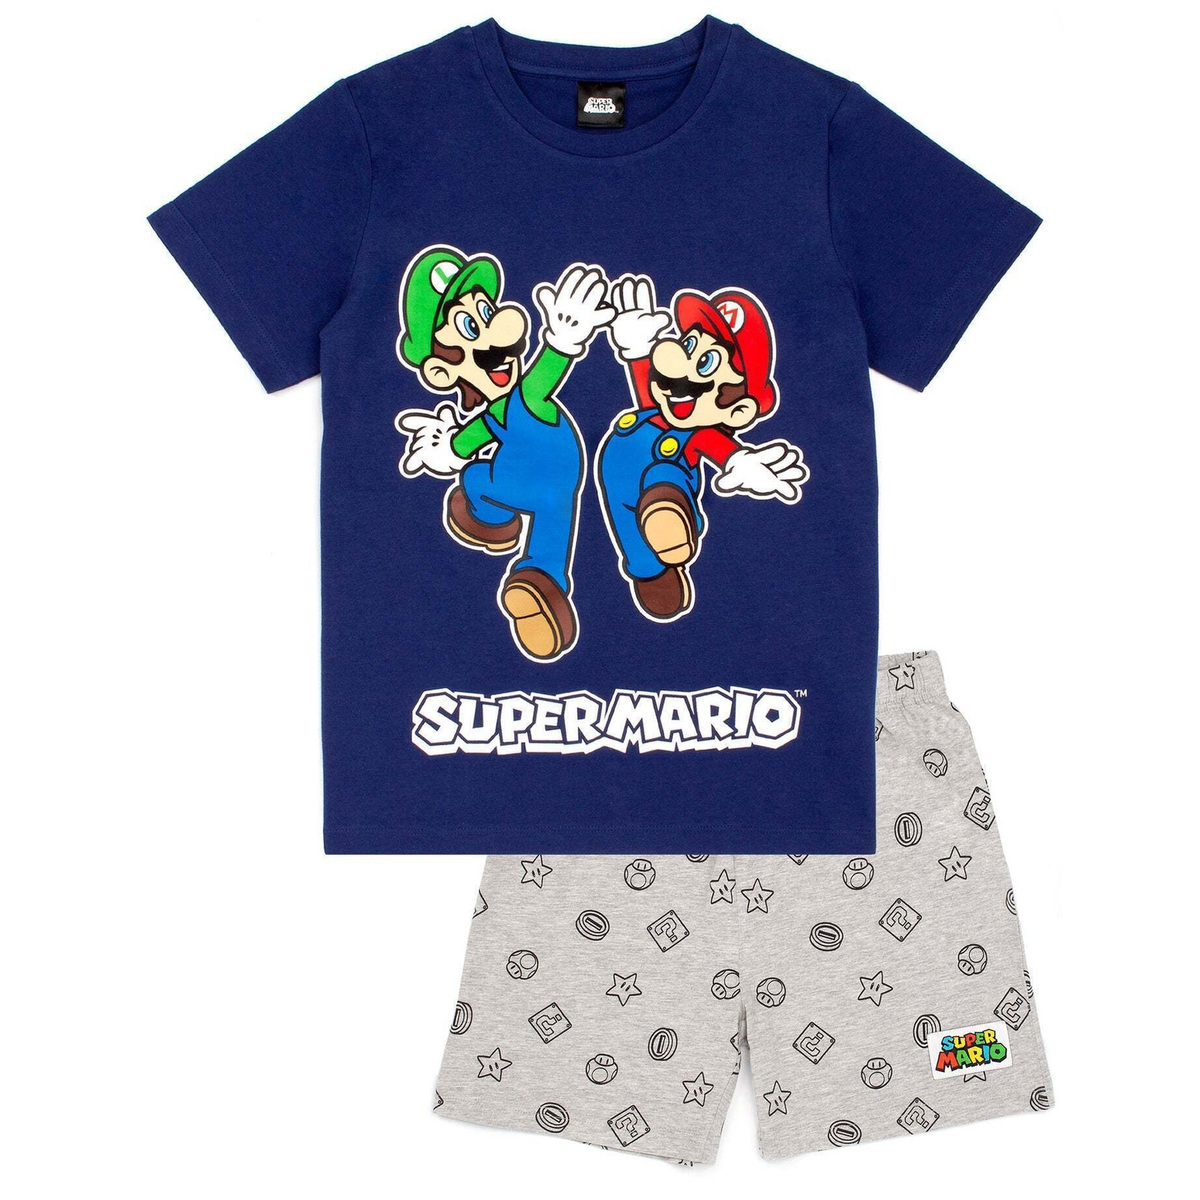 (スーパーマリオブラザーズ) Super Mario オフィシャル商品 キッズ・子供 ボーイズ パジャマ 半袖 半ズボン 上下セット  【海外通販】 Pertemba Japan